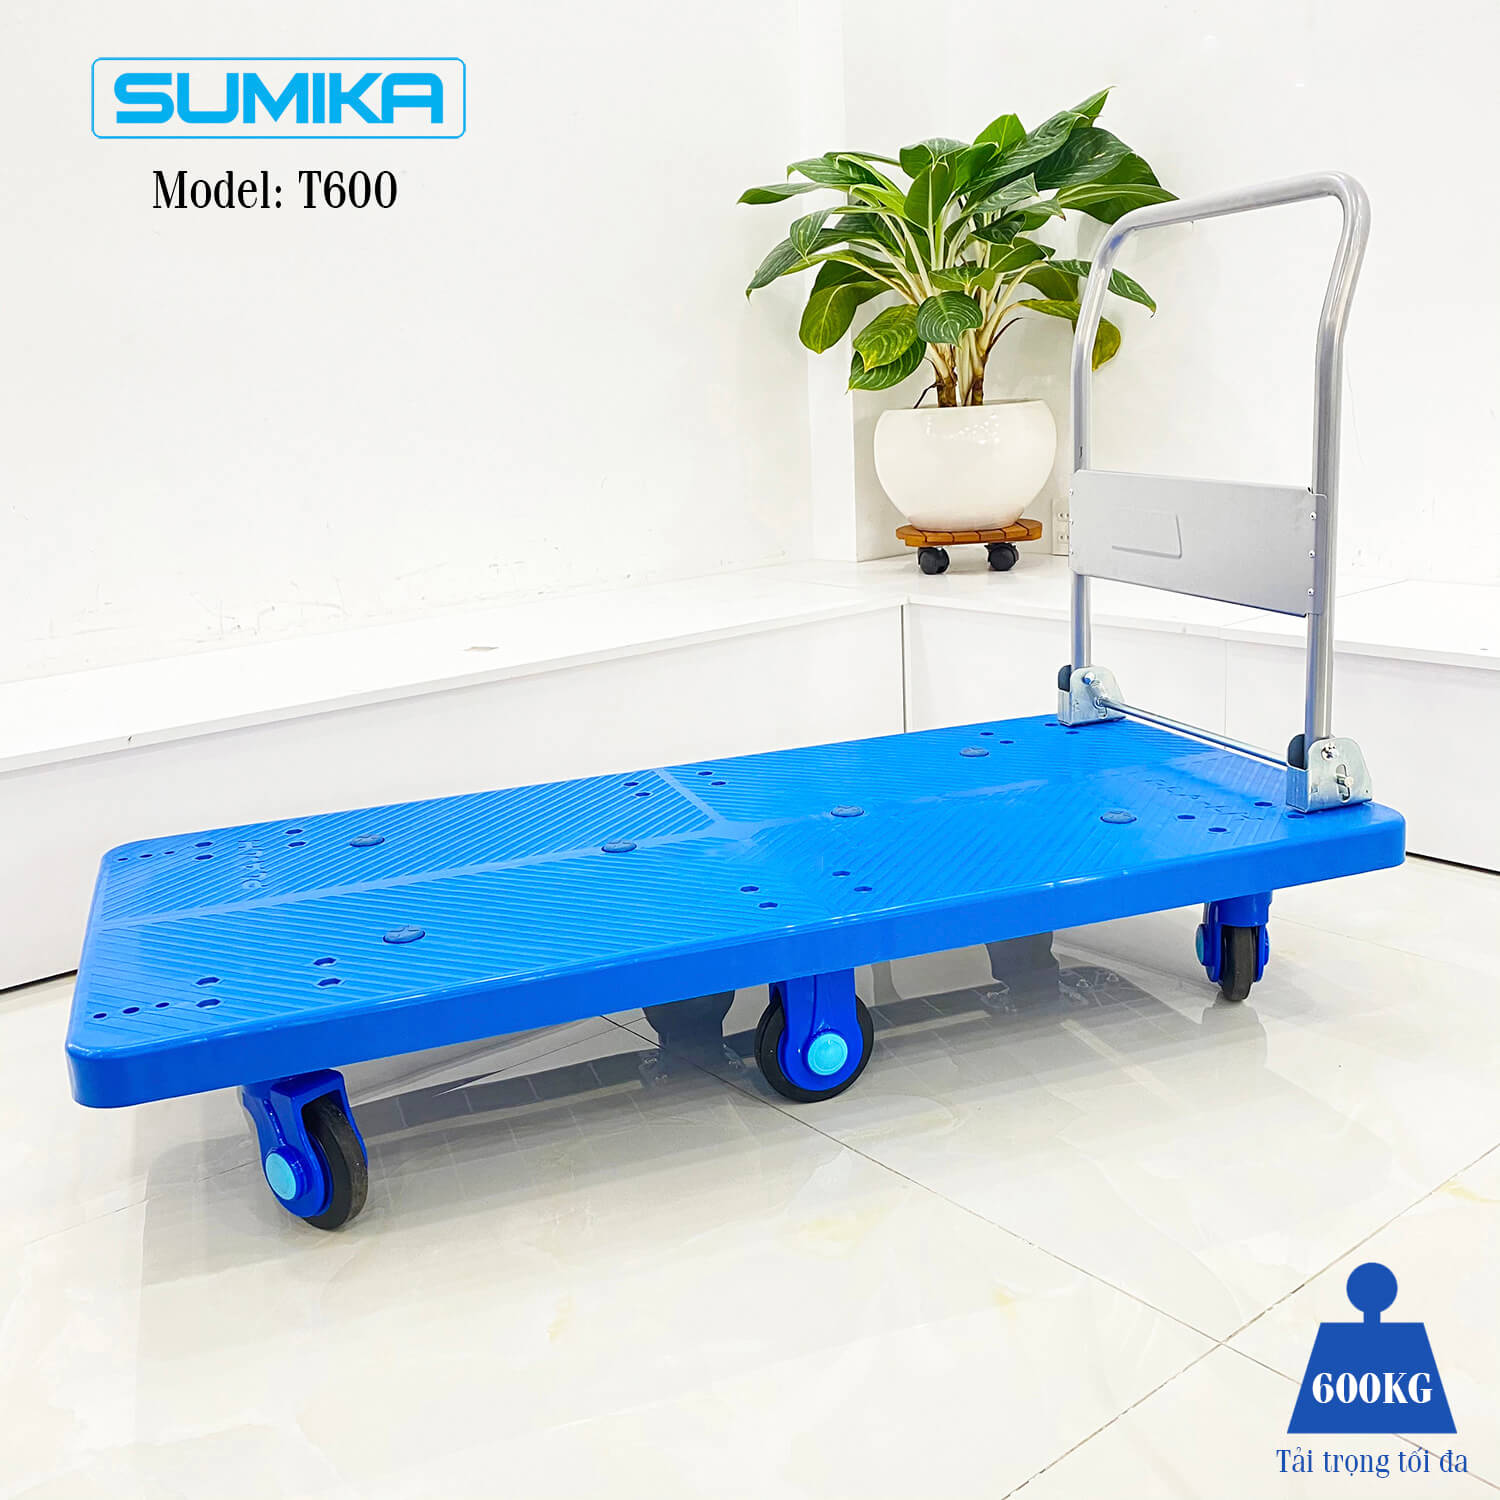 Sumika T600 plastic floor trolleys (600kg load)